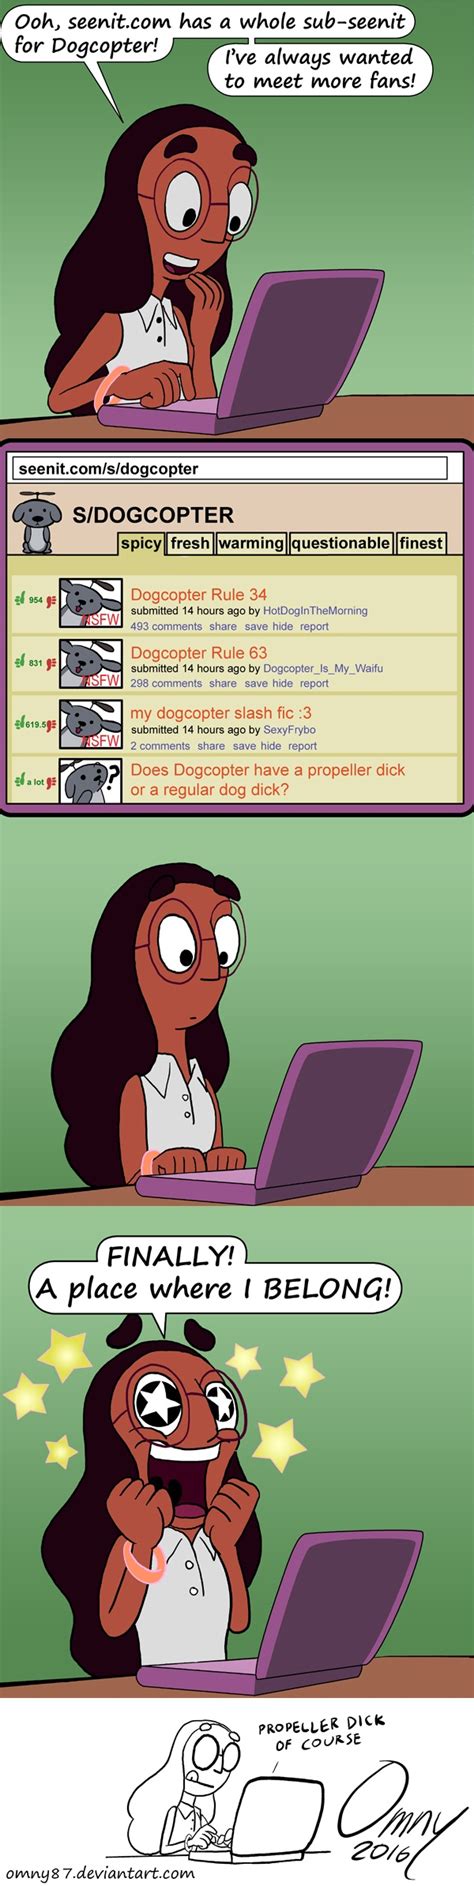 Connie S Internets Steven Universe Know Your Meme